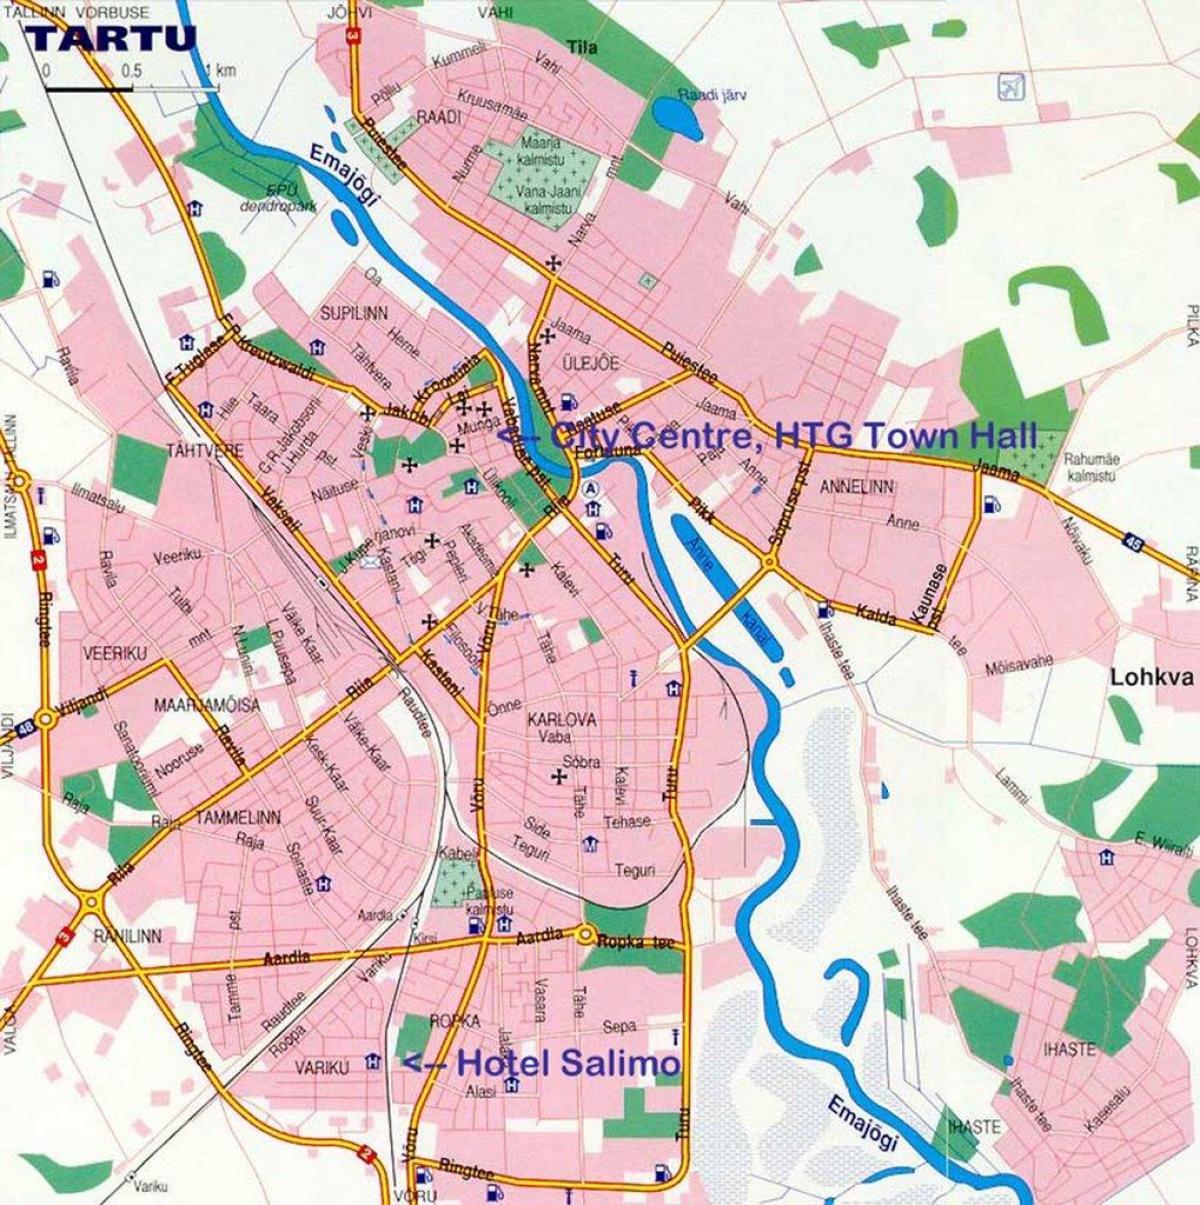 map of tartu Estonia